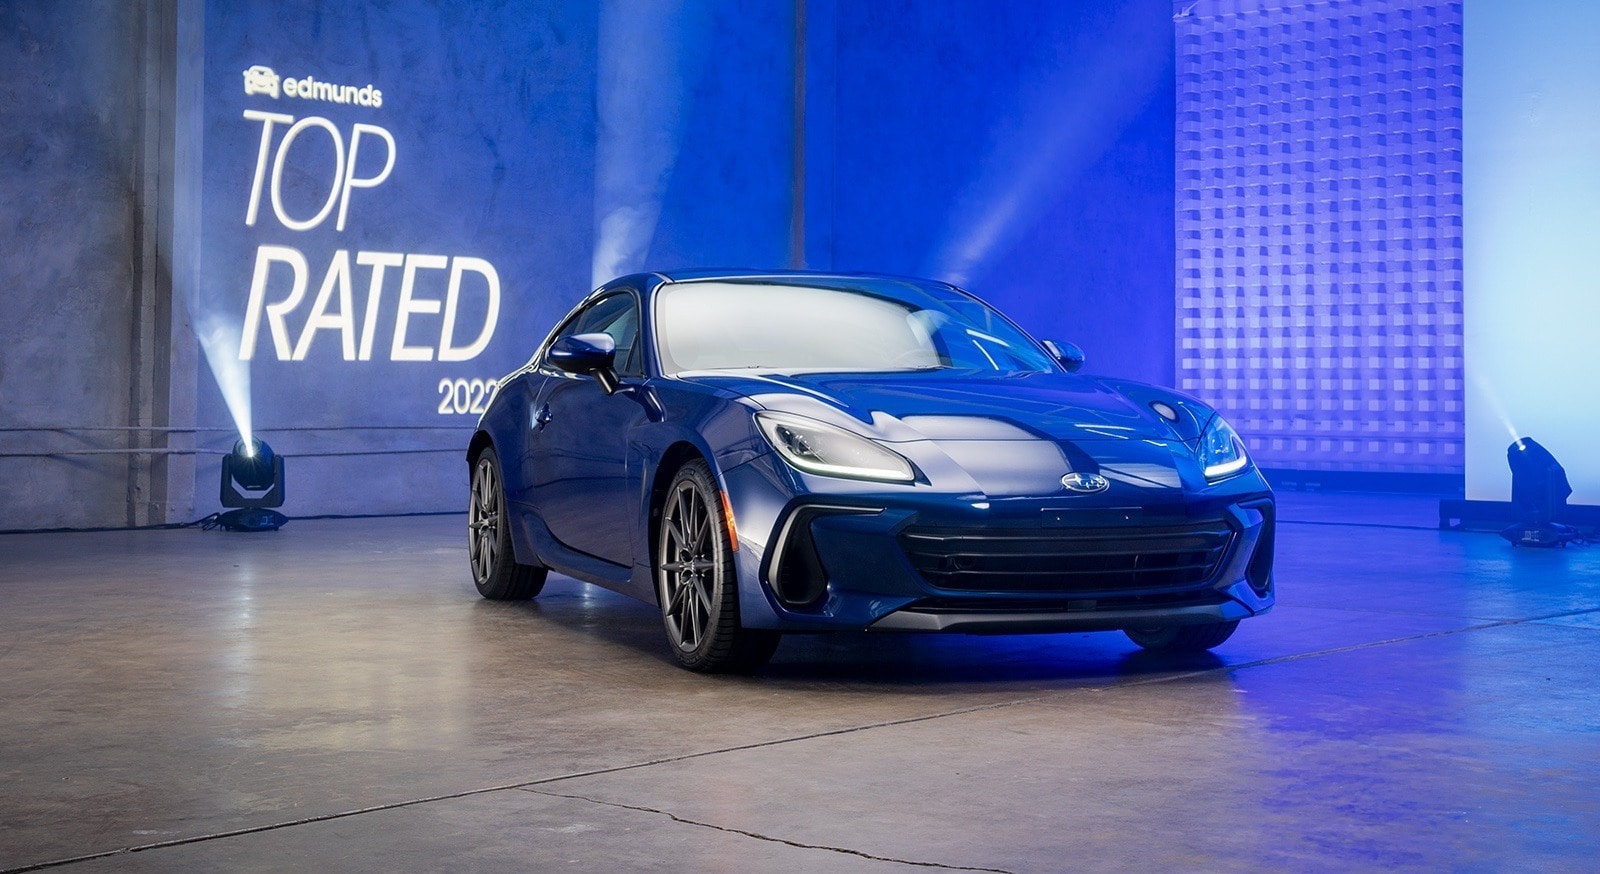 2022 Subaru BRZ: Edmunds Top Rated Sports Car | Edmunds Top Rated Awards 2022